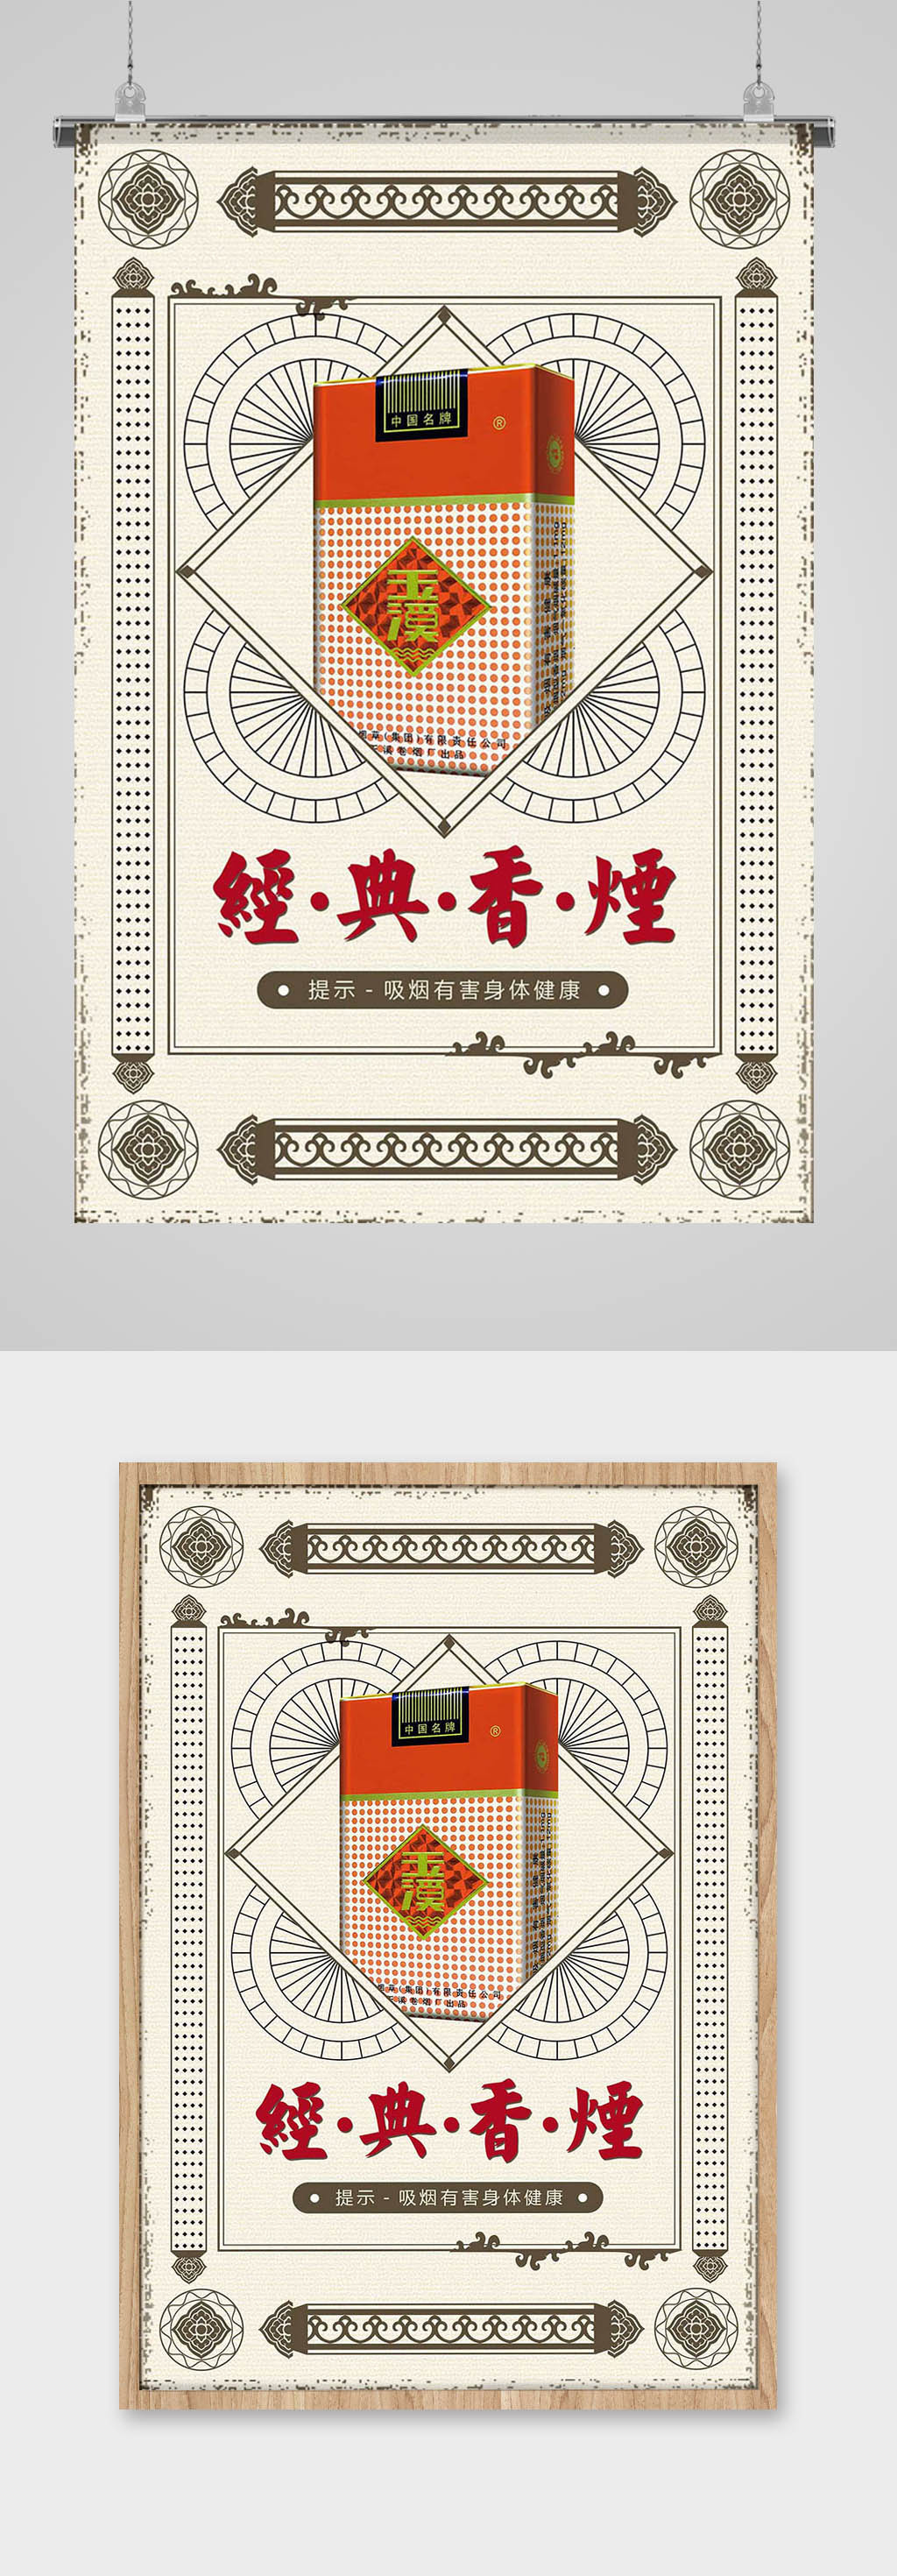 中国烟草海报图片图片